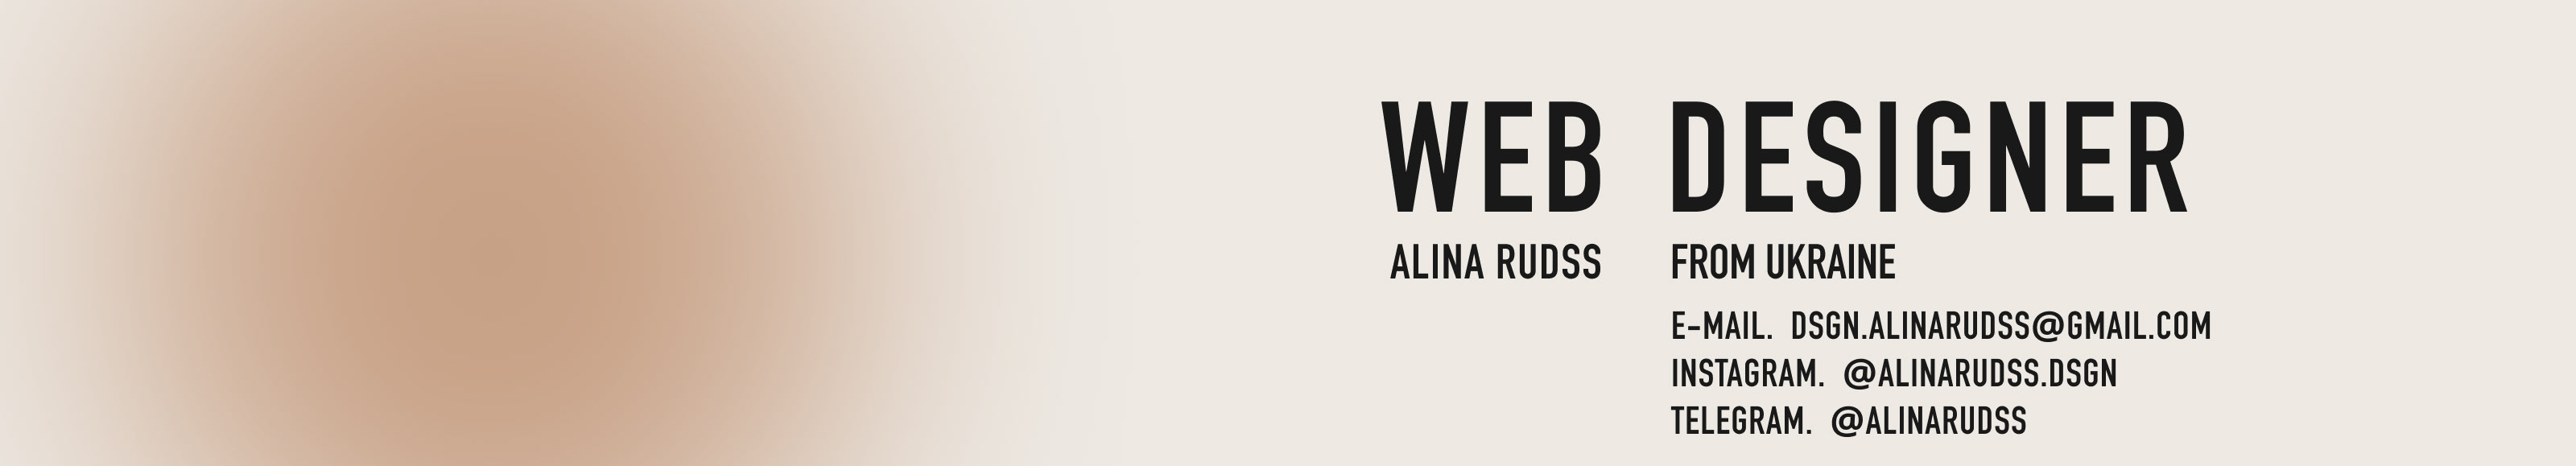 Banner de perfil de ALINA RUDSS